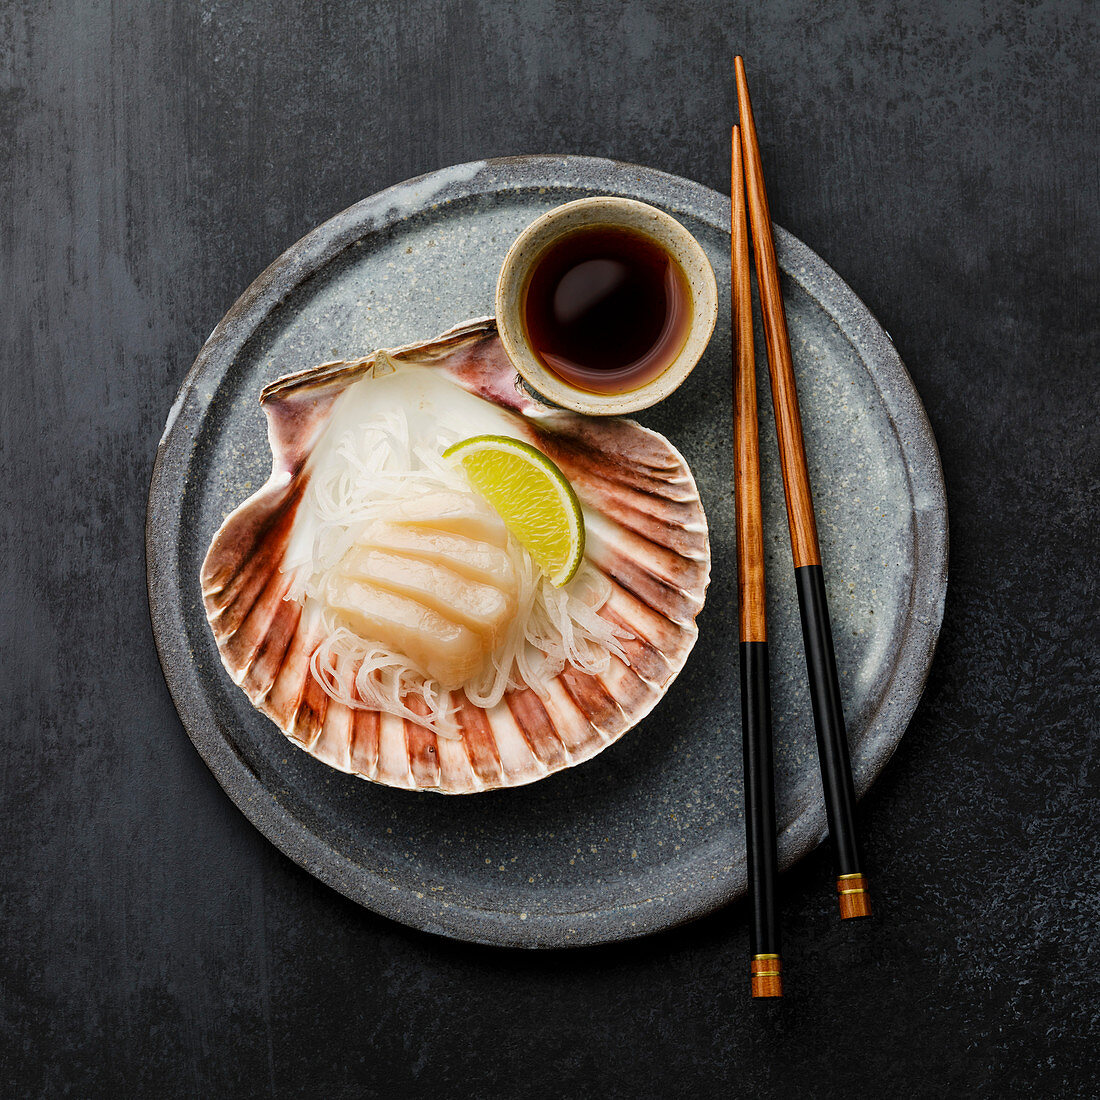 Scallop sashimi on shell with daikon, lime and soy sauce